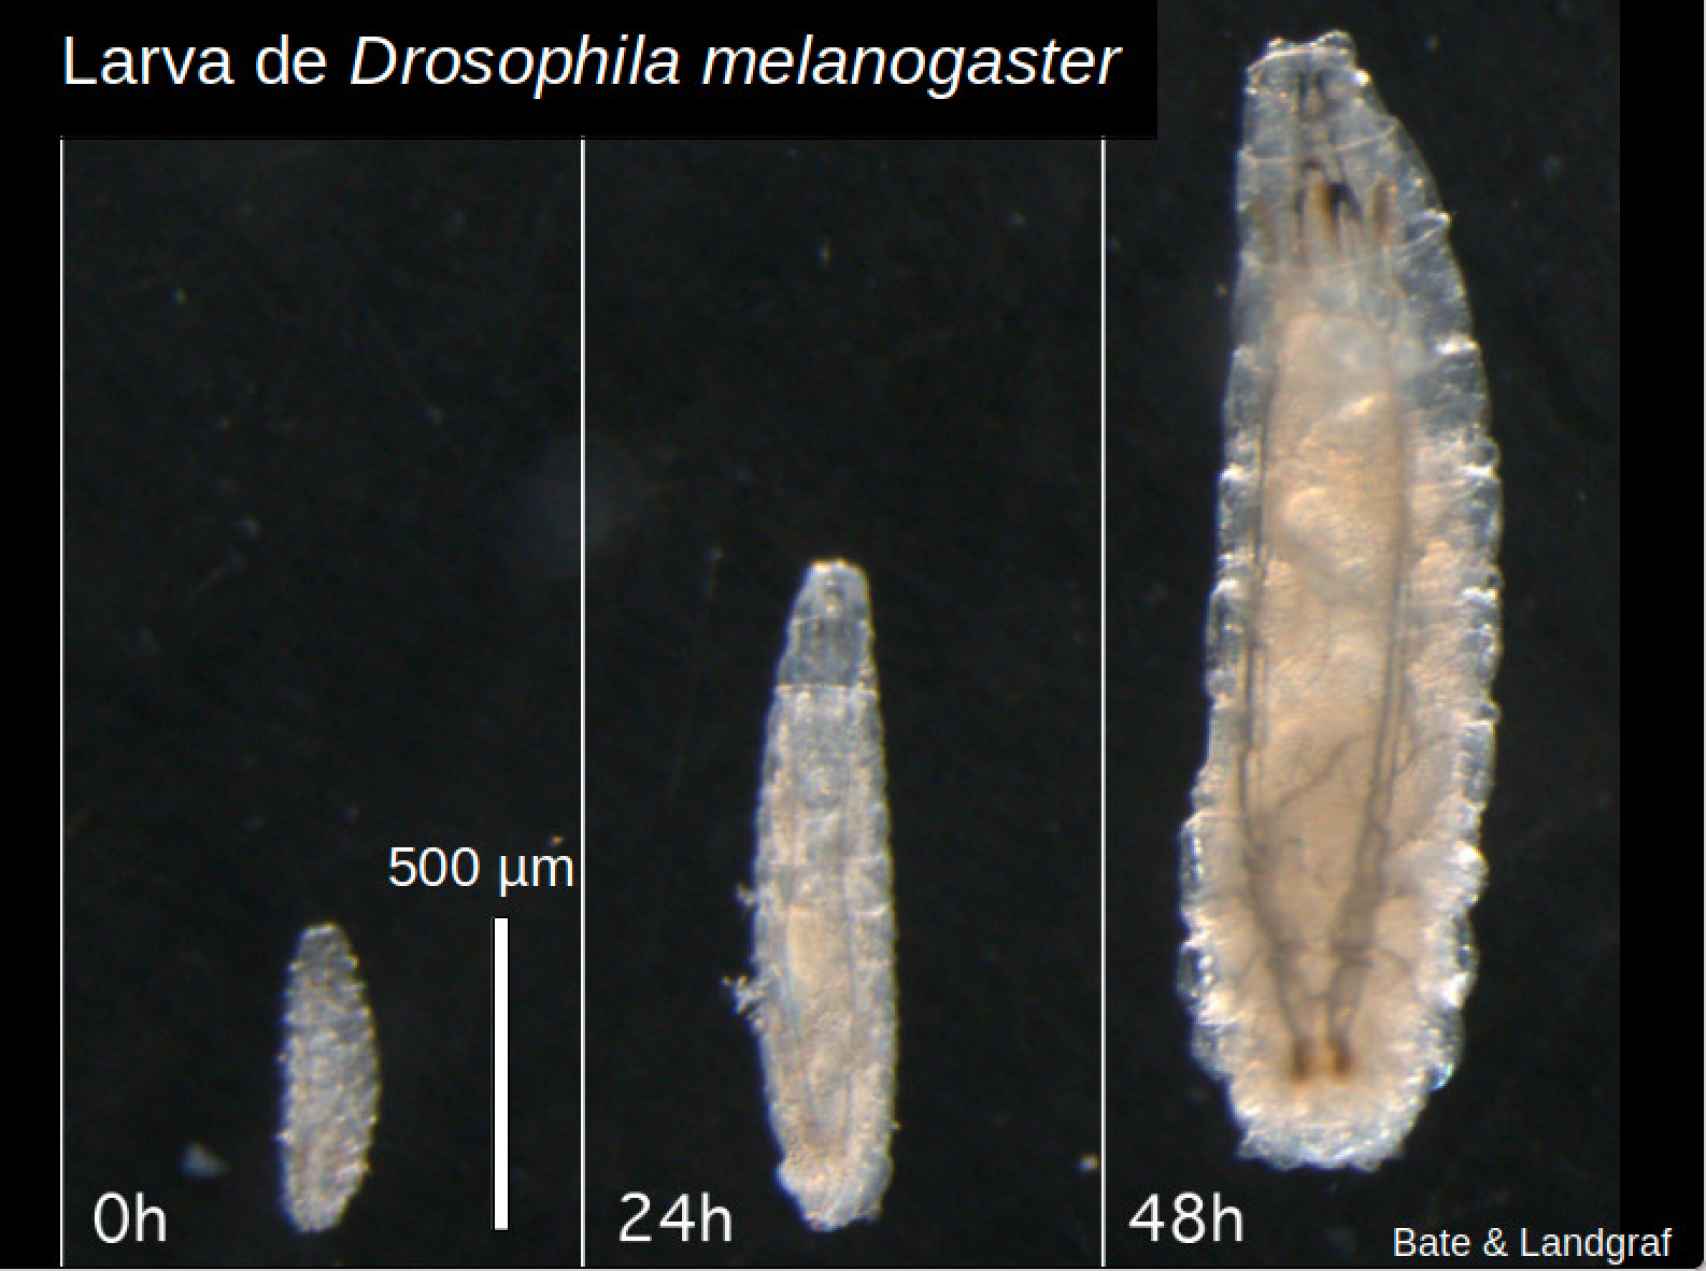 Larva de Drosophila melanogaster, desde su primer estadio donde mide tan sólo 0.5 milímetros hasta 2 días después cuando creció hasta los 2 mm de largo. Vive hasta los 5 días, luego hace el capullo y se pasa otros tantos días hasta que emerge la mosca adulta.